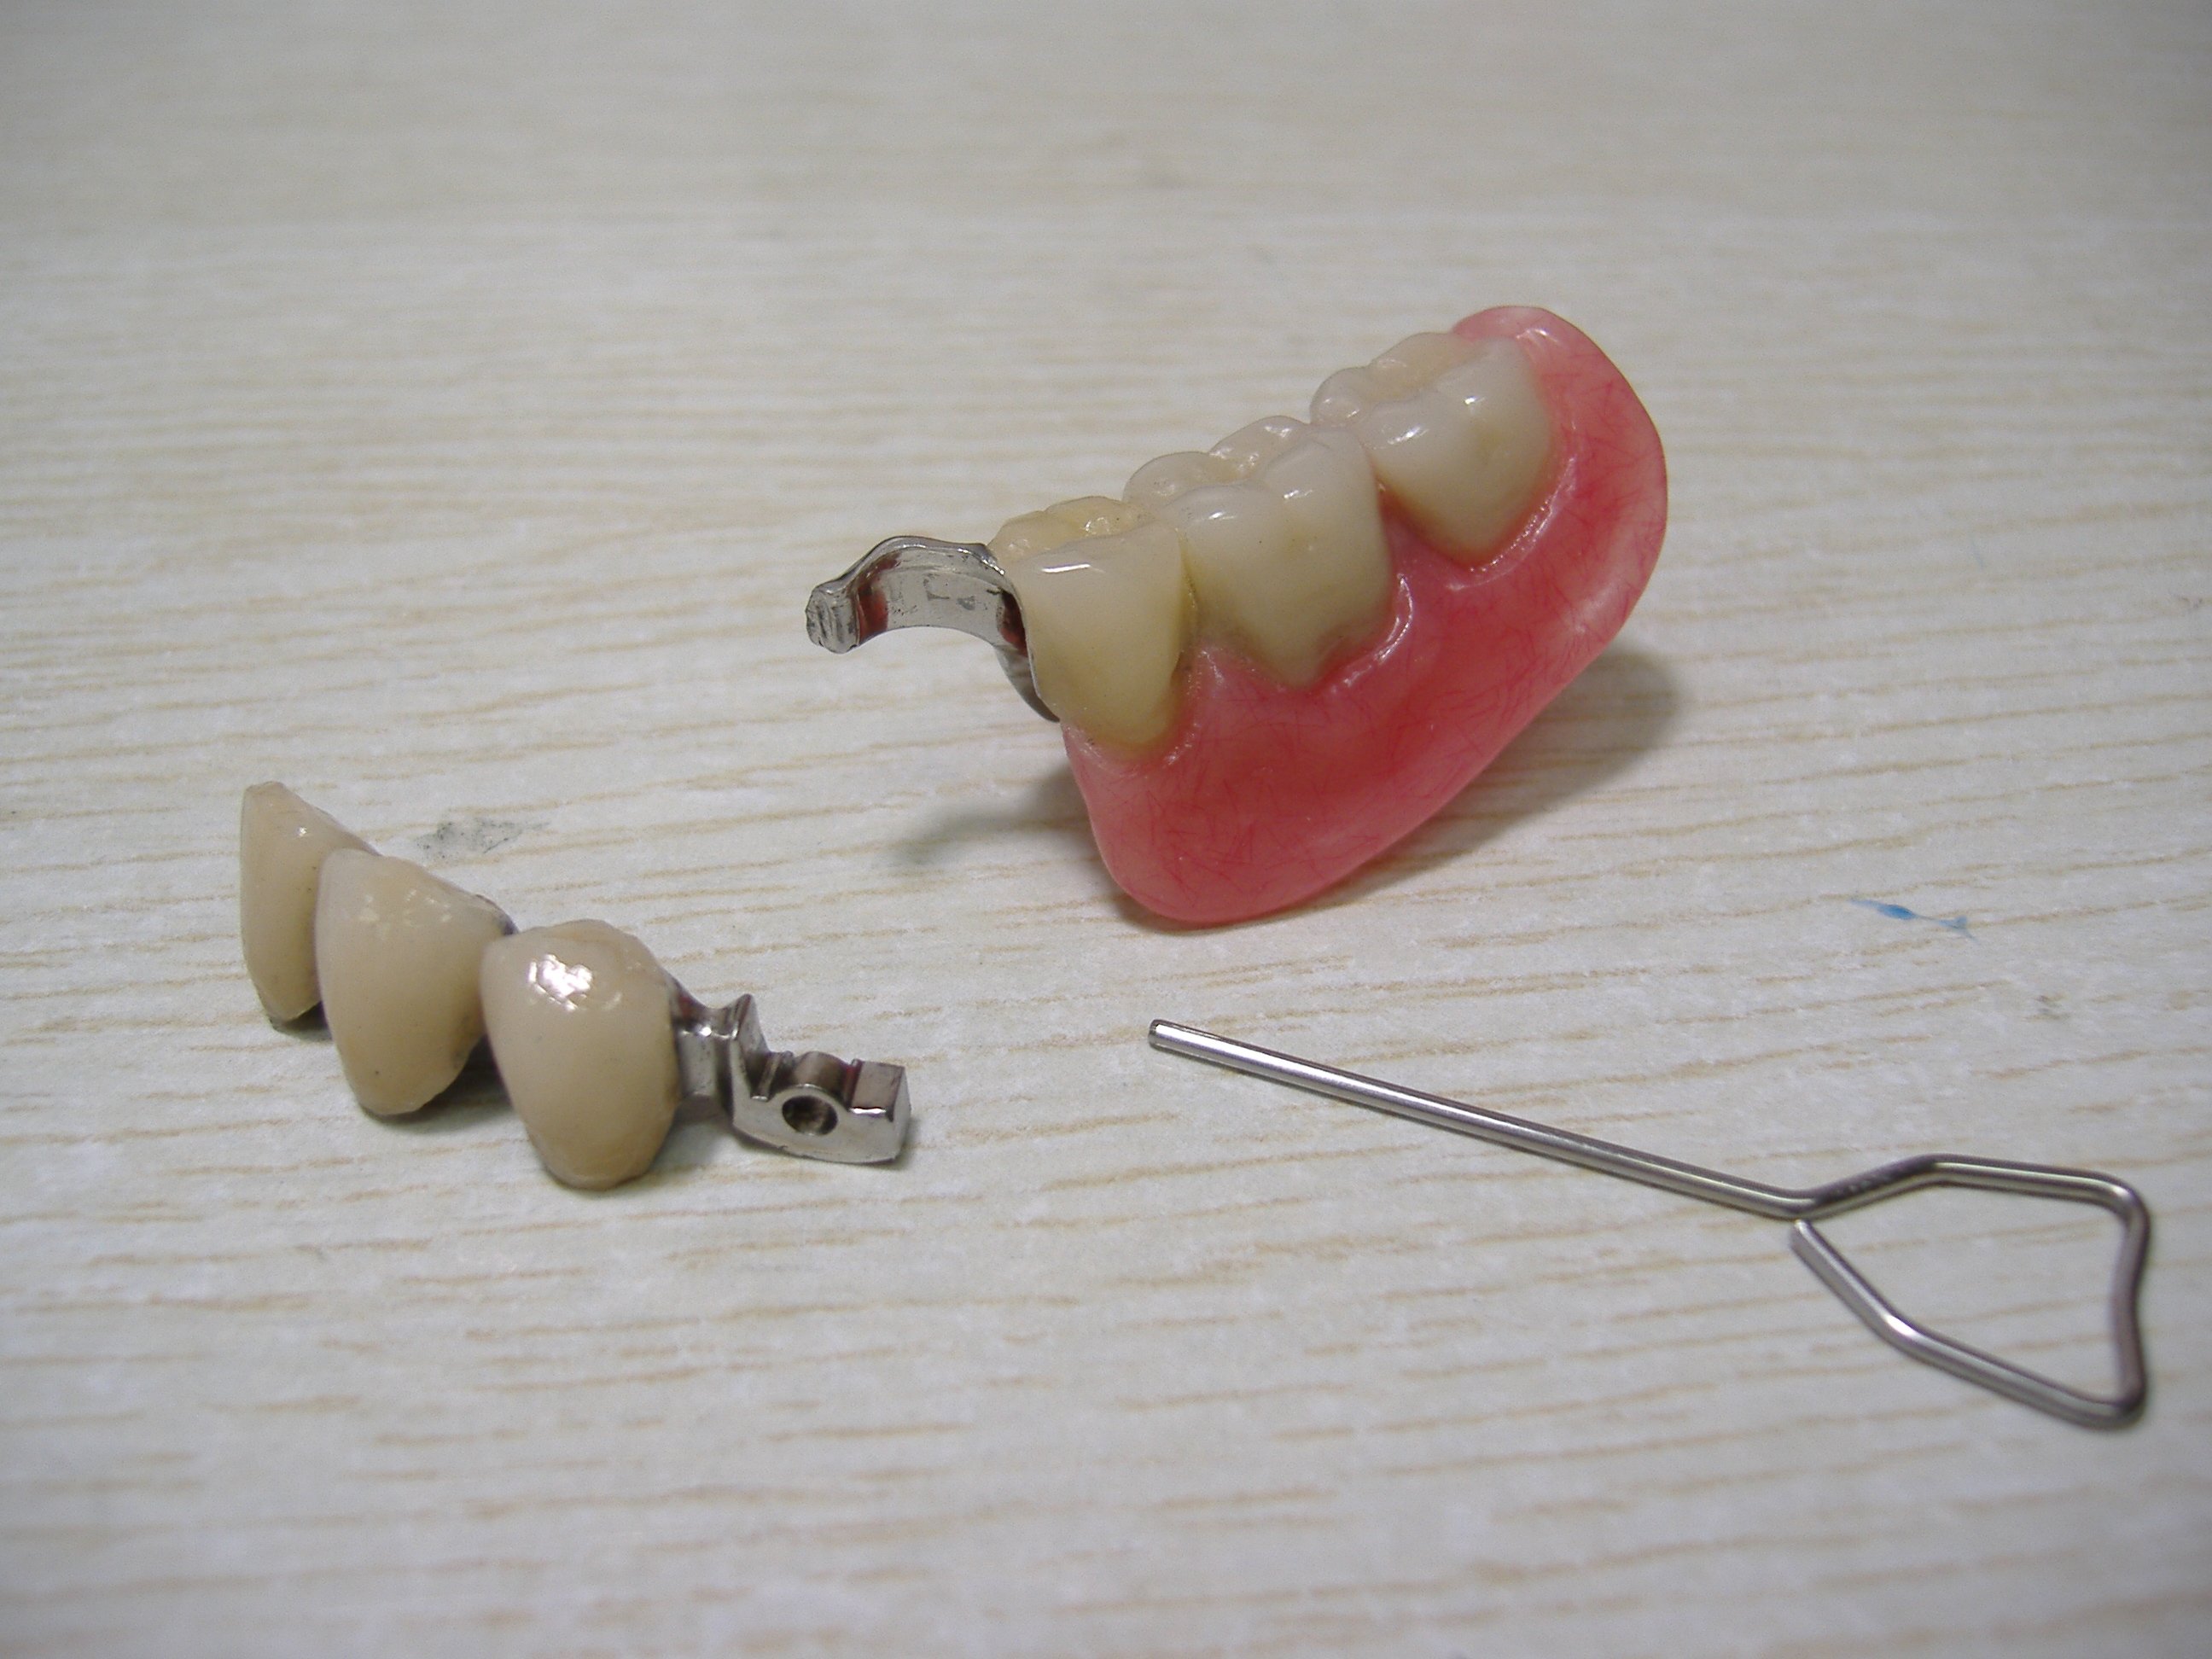 Стоматологическое протезирование отзывы. Бюгельный протез МК-1 односторонний. Бюгельный протез замковый (2 замка Bredent). Бюгельный зубной протез.